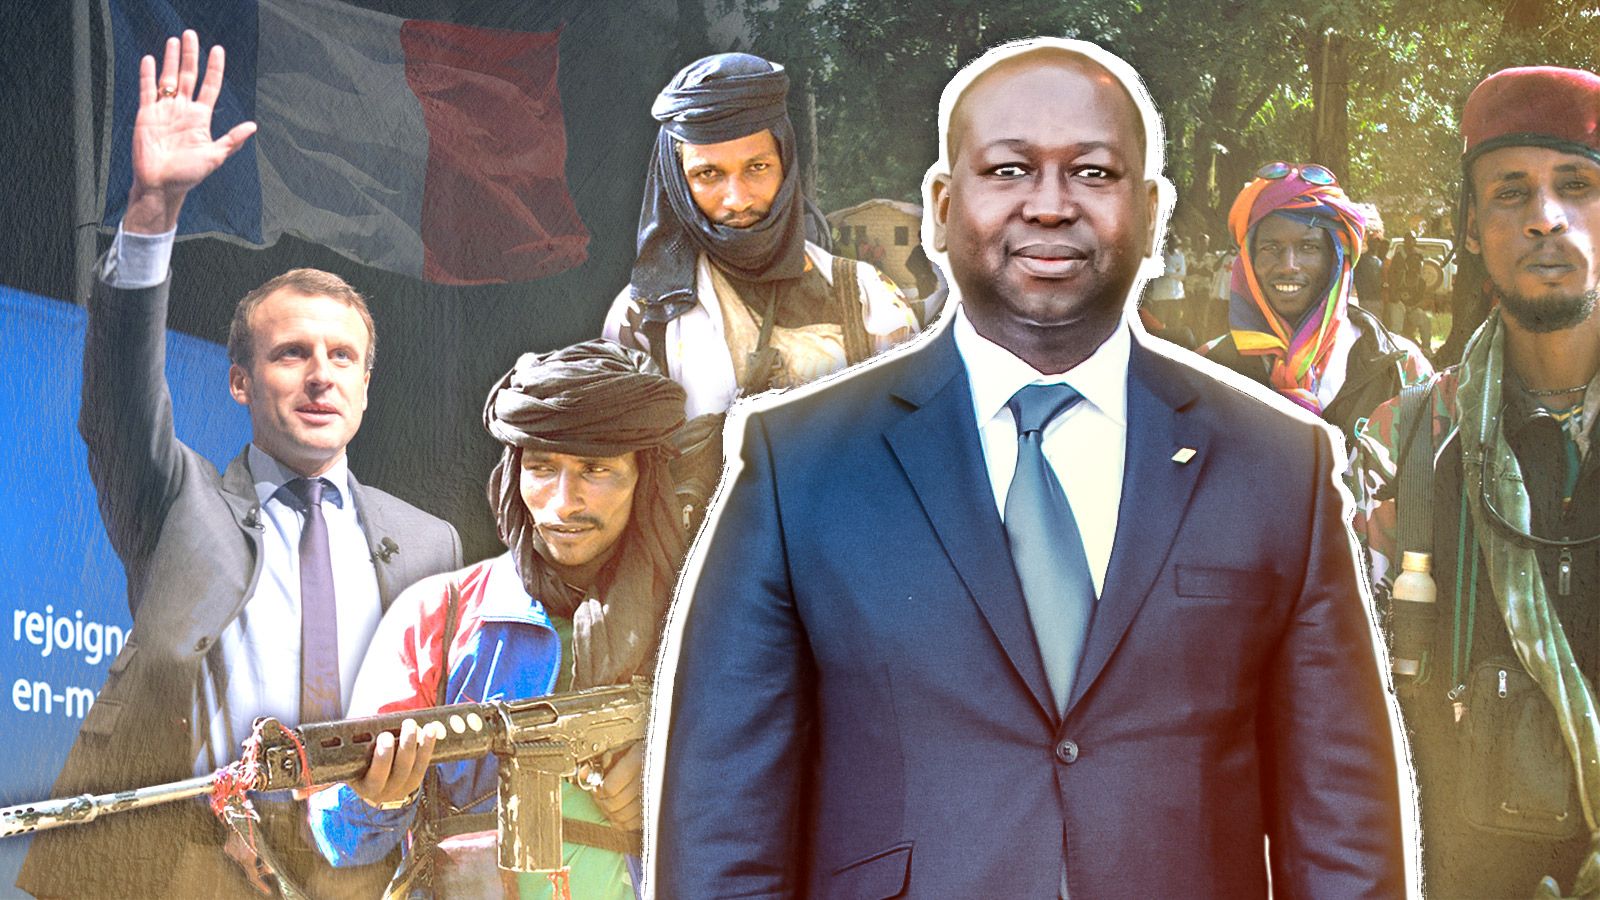 Francia en África: el patrocinio del terrorismo Agencia Federal de Noticias, San Petersburgo, Rusia